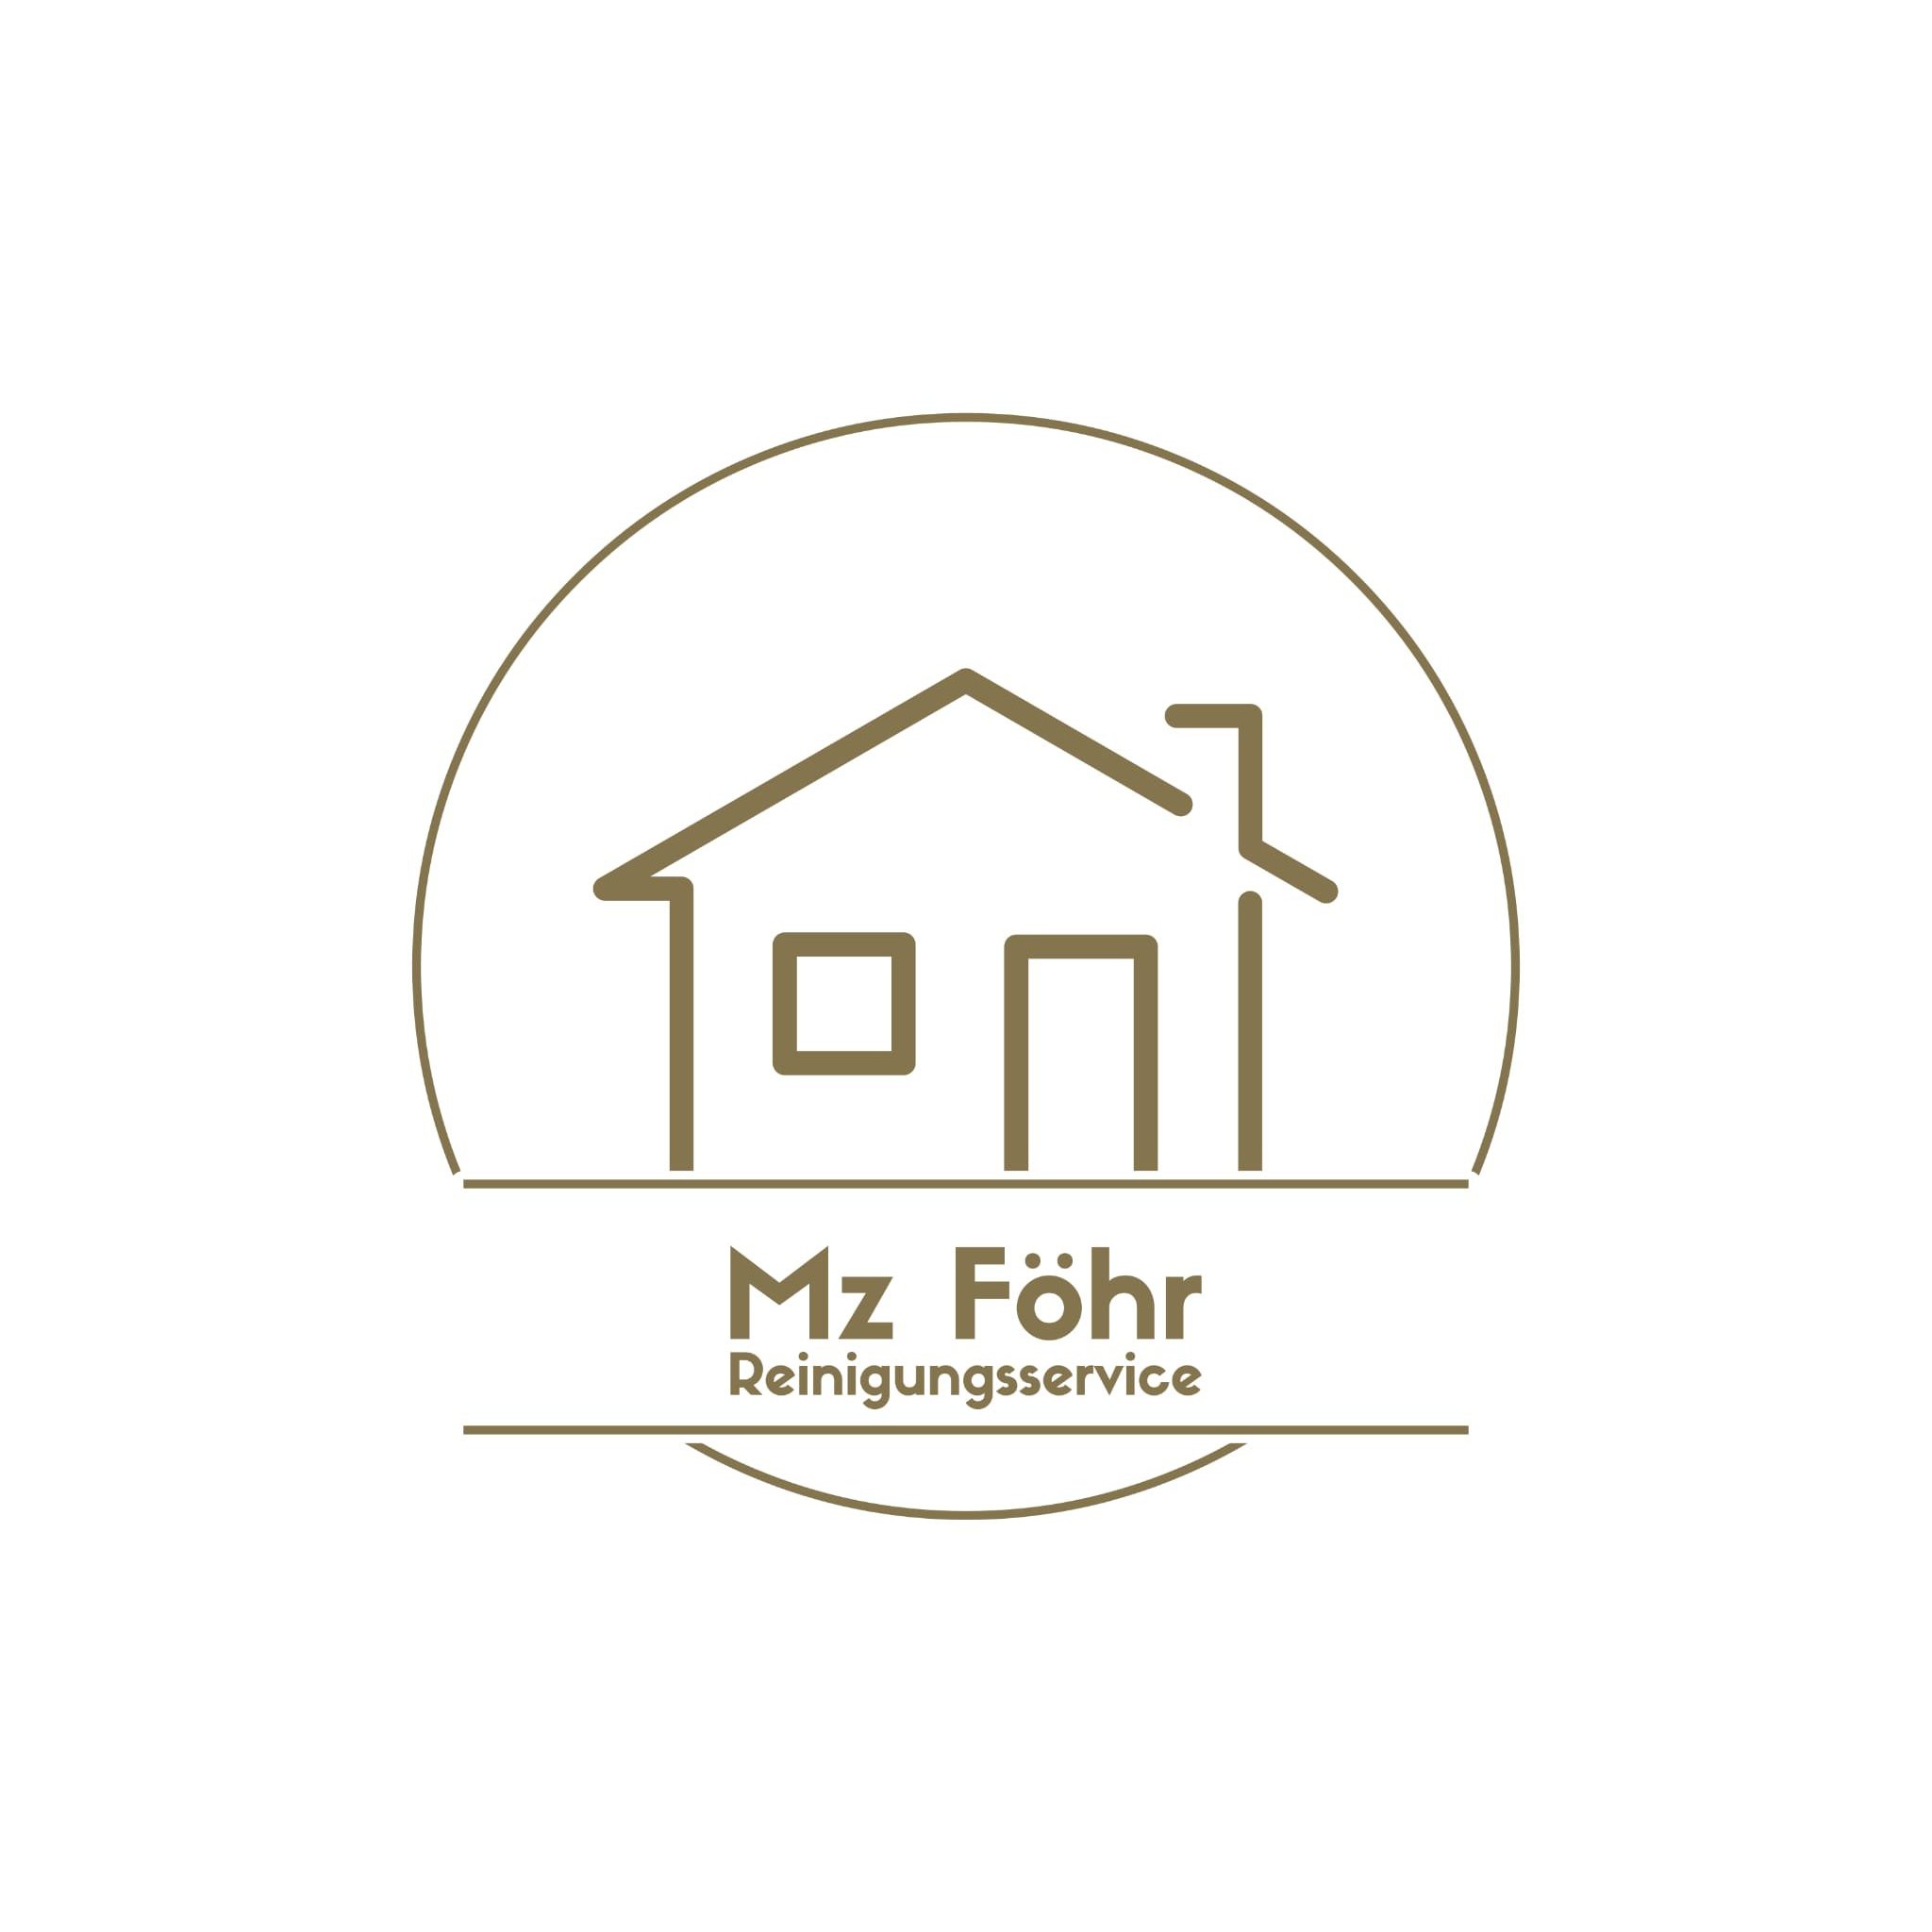 MZ Föhr Reinigungsservice in Wyk auf Föhr - Logo